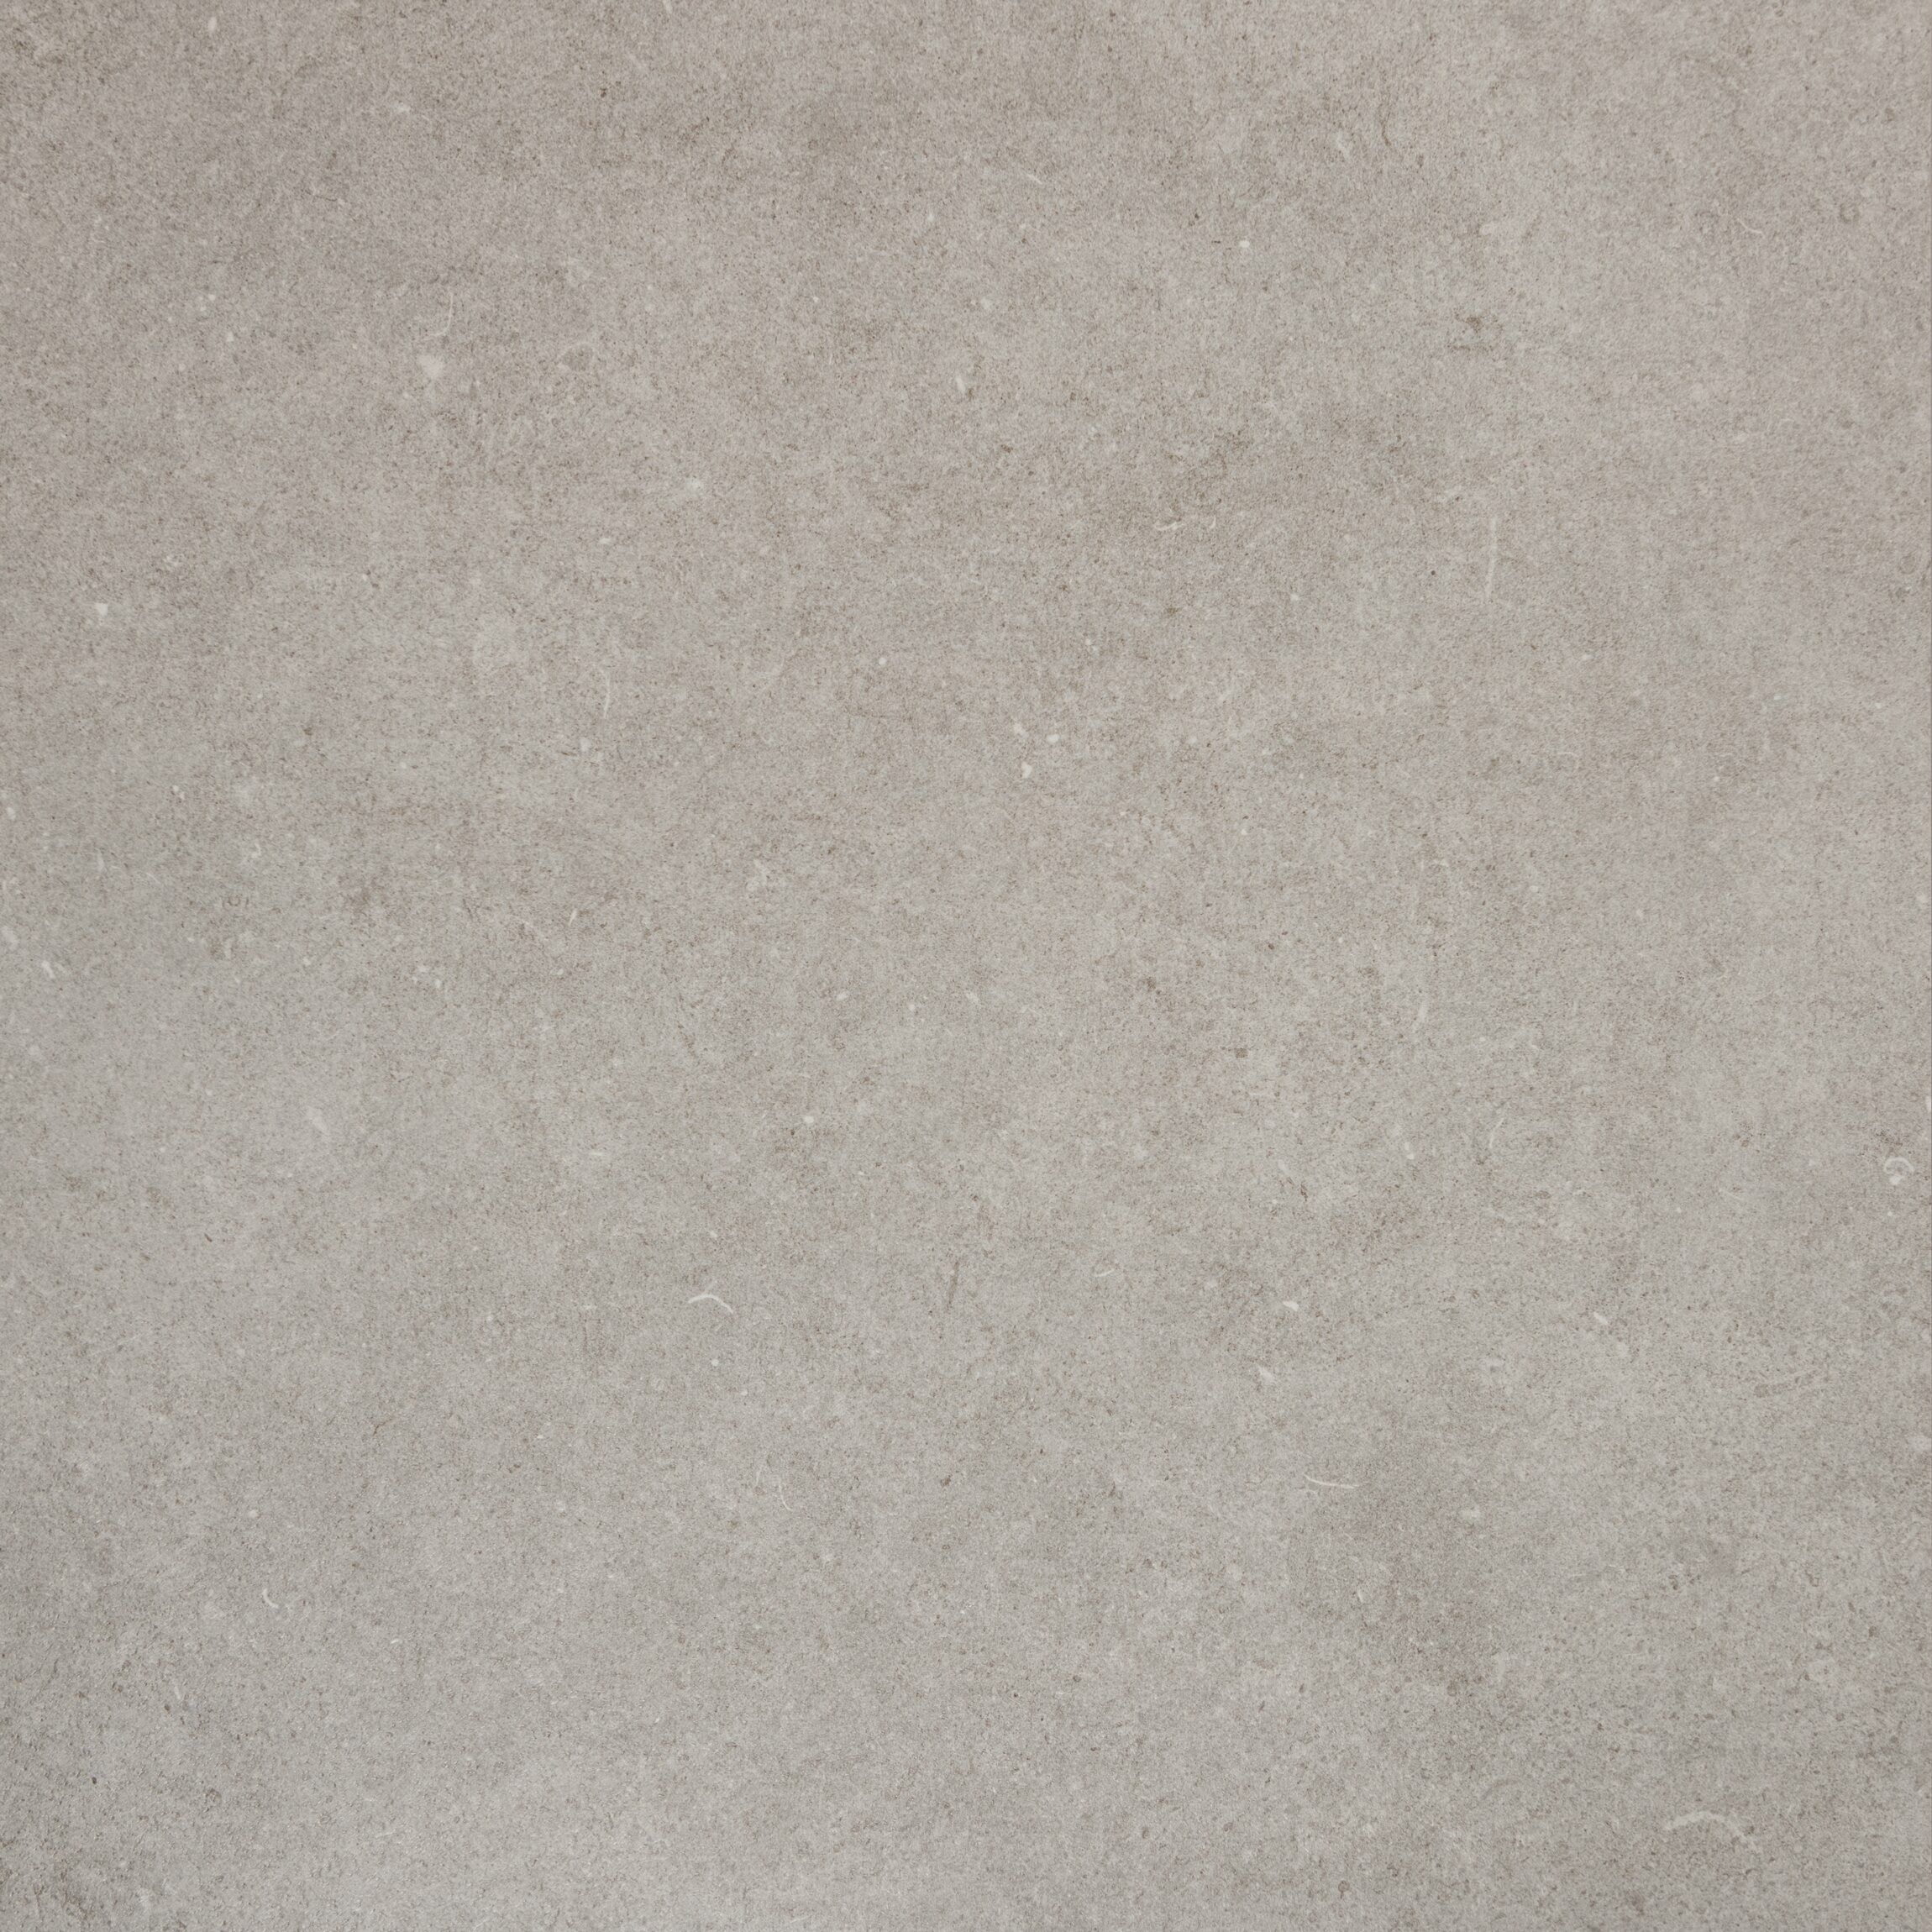 Mottle Light Grey tile